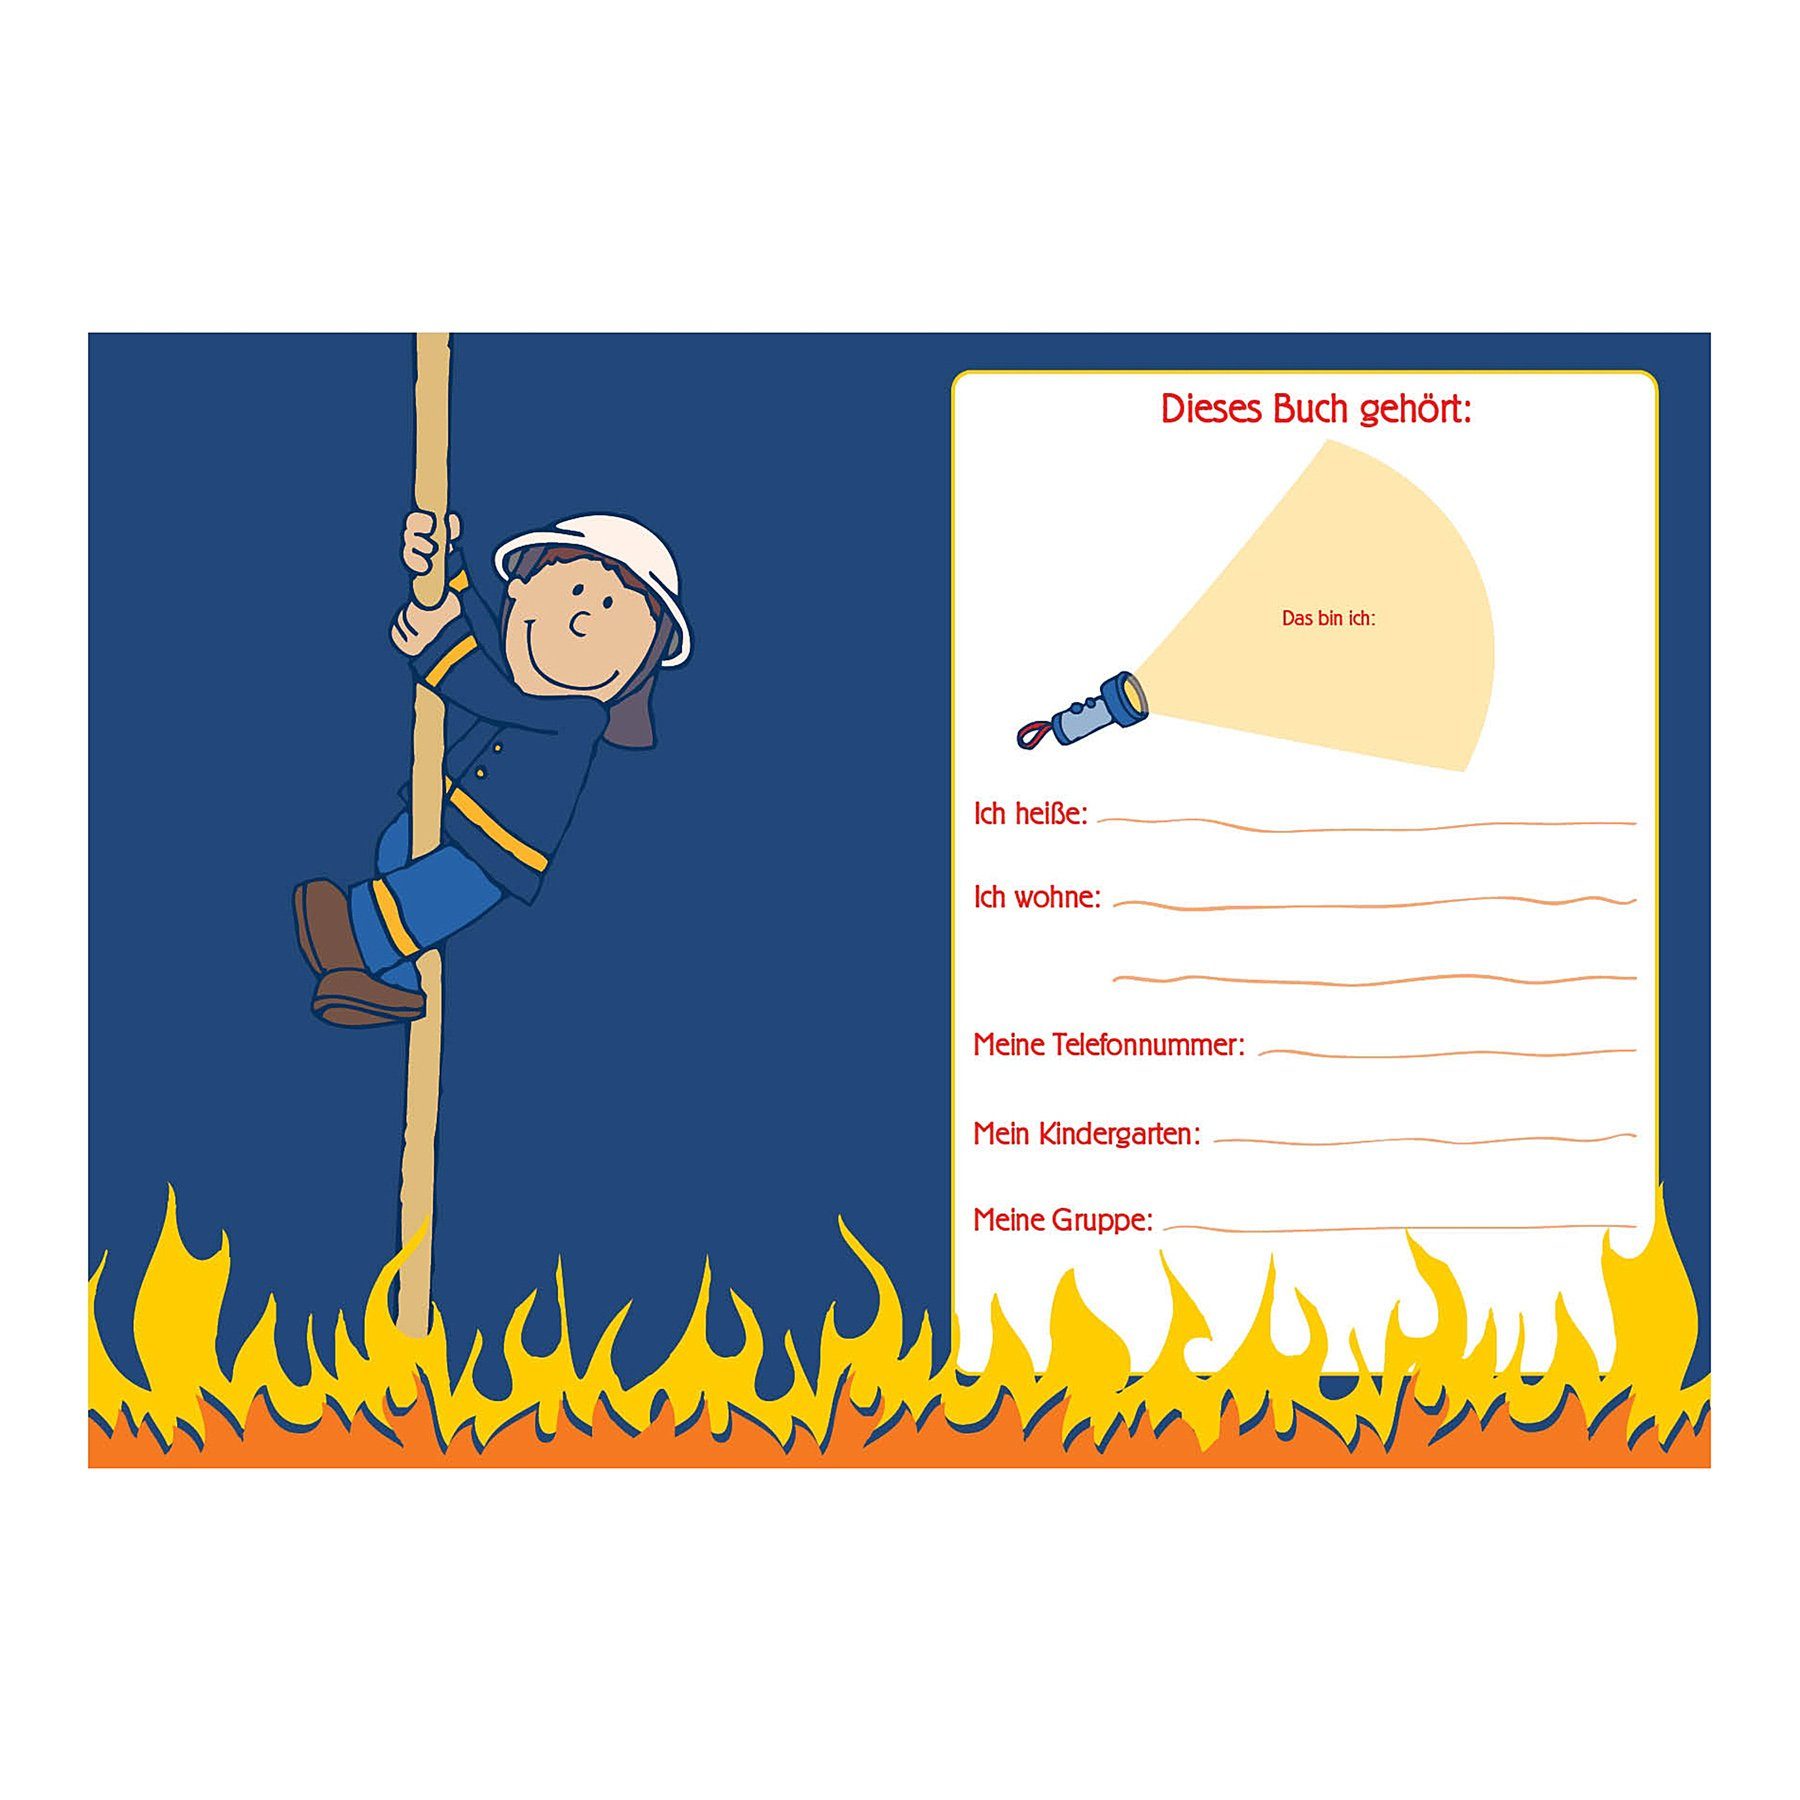 Kindergarten-Freundebuch goldbuch "Frido Goldbuch Notizbuch A5 Firefighter",